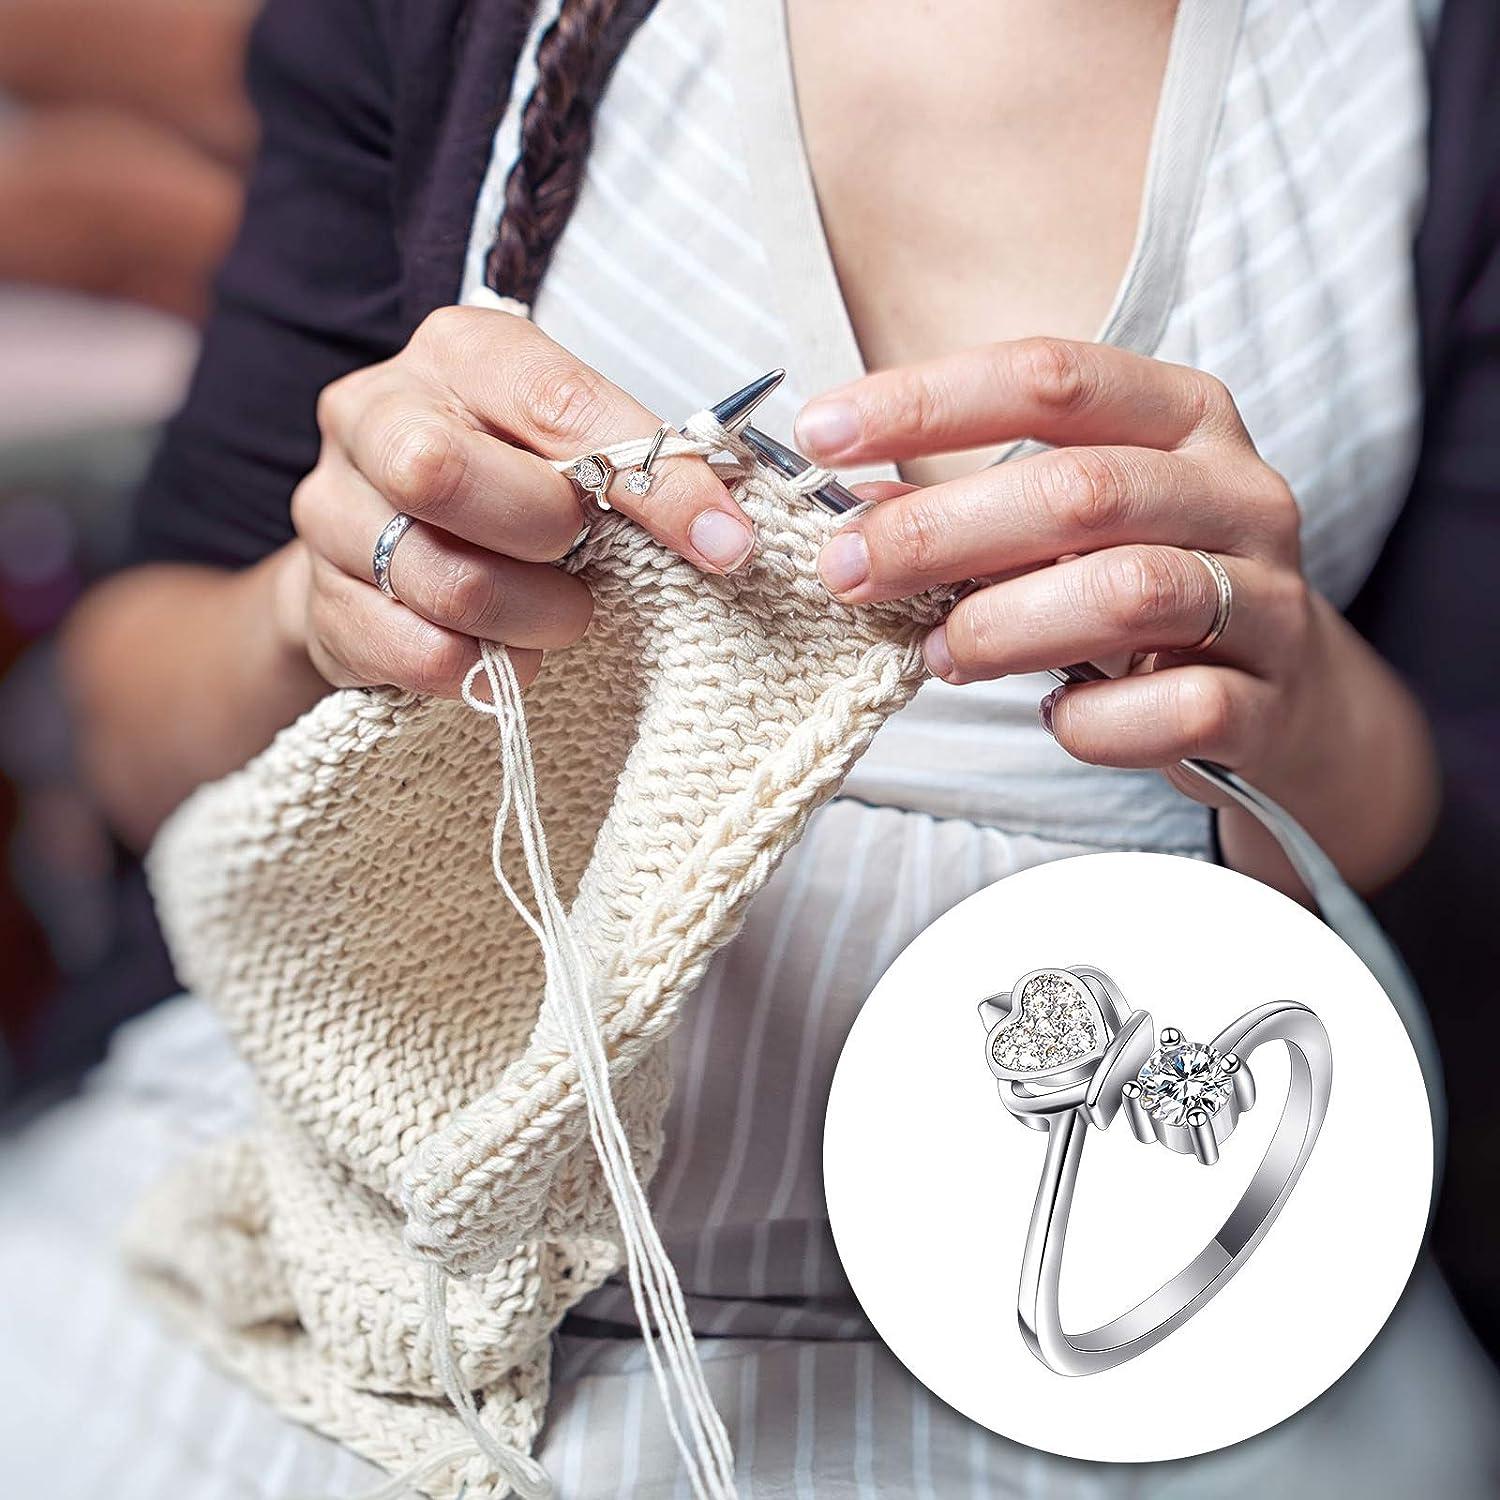  Juszok Adjustable Crochet Ring For Finger,Braided